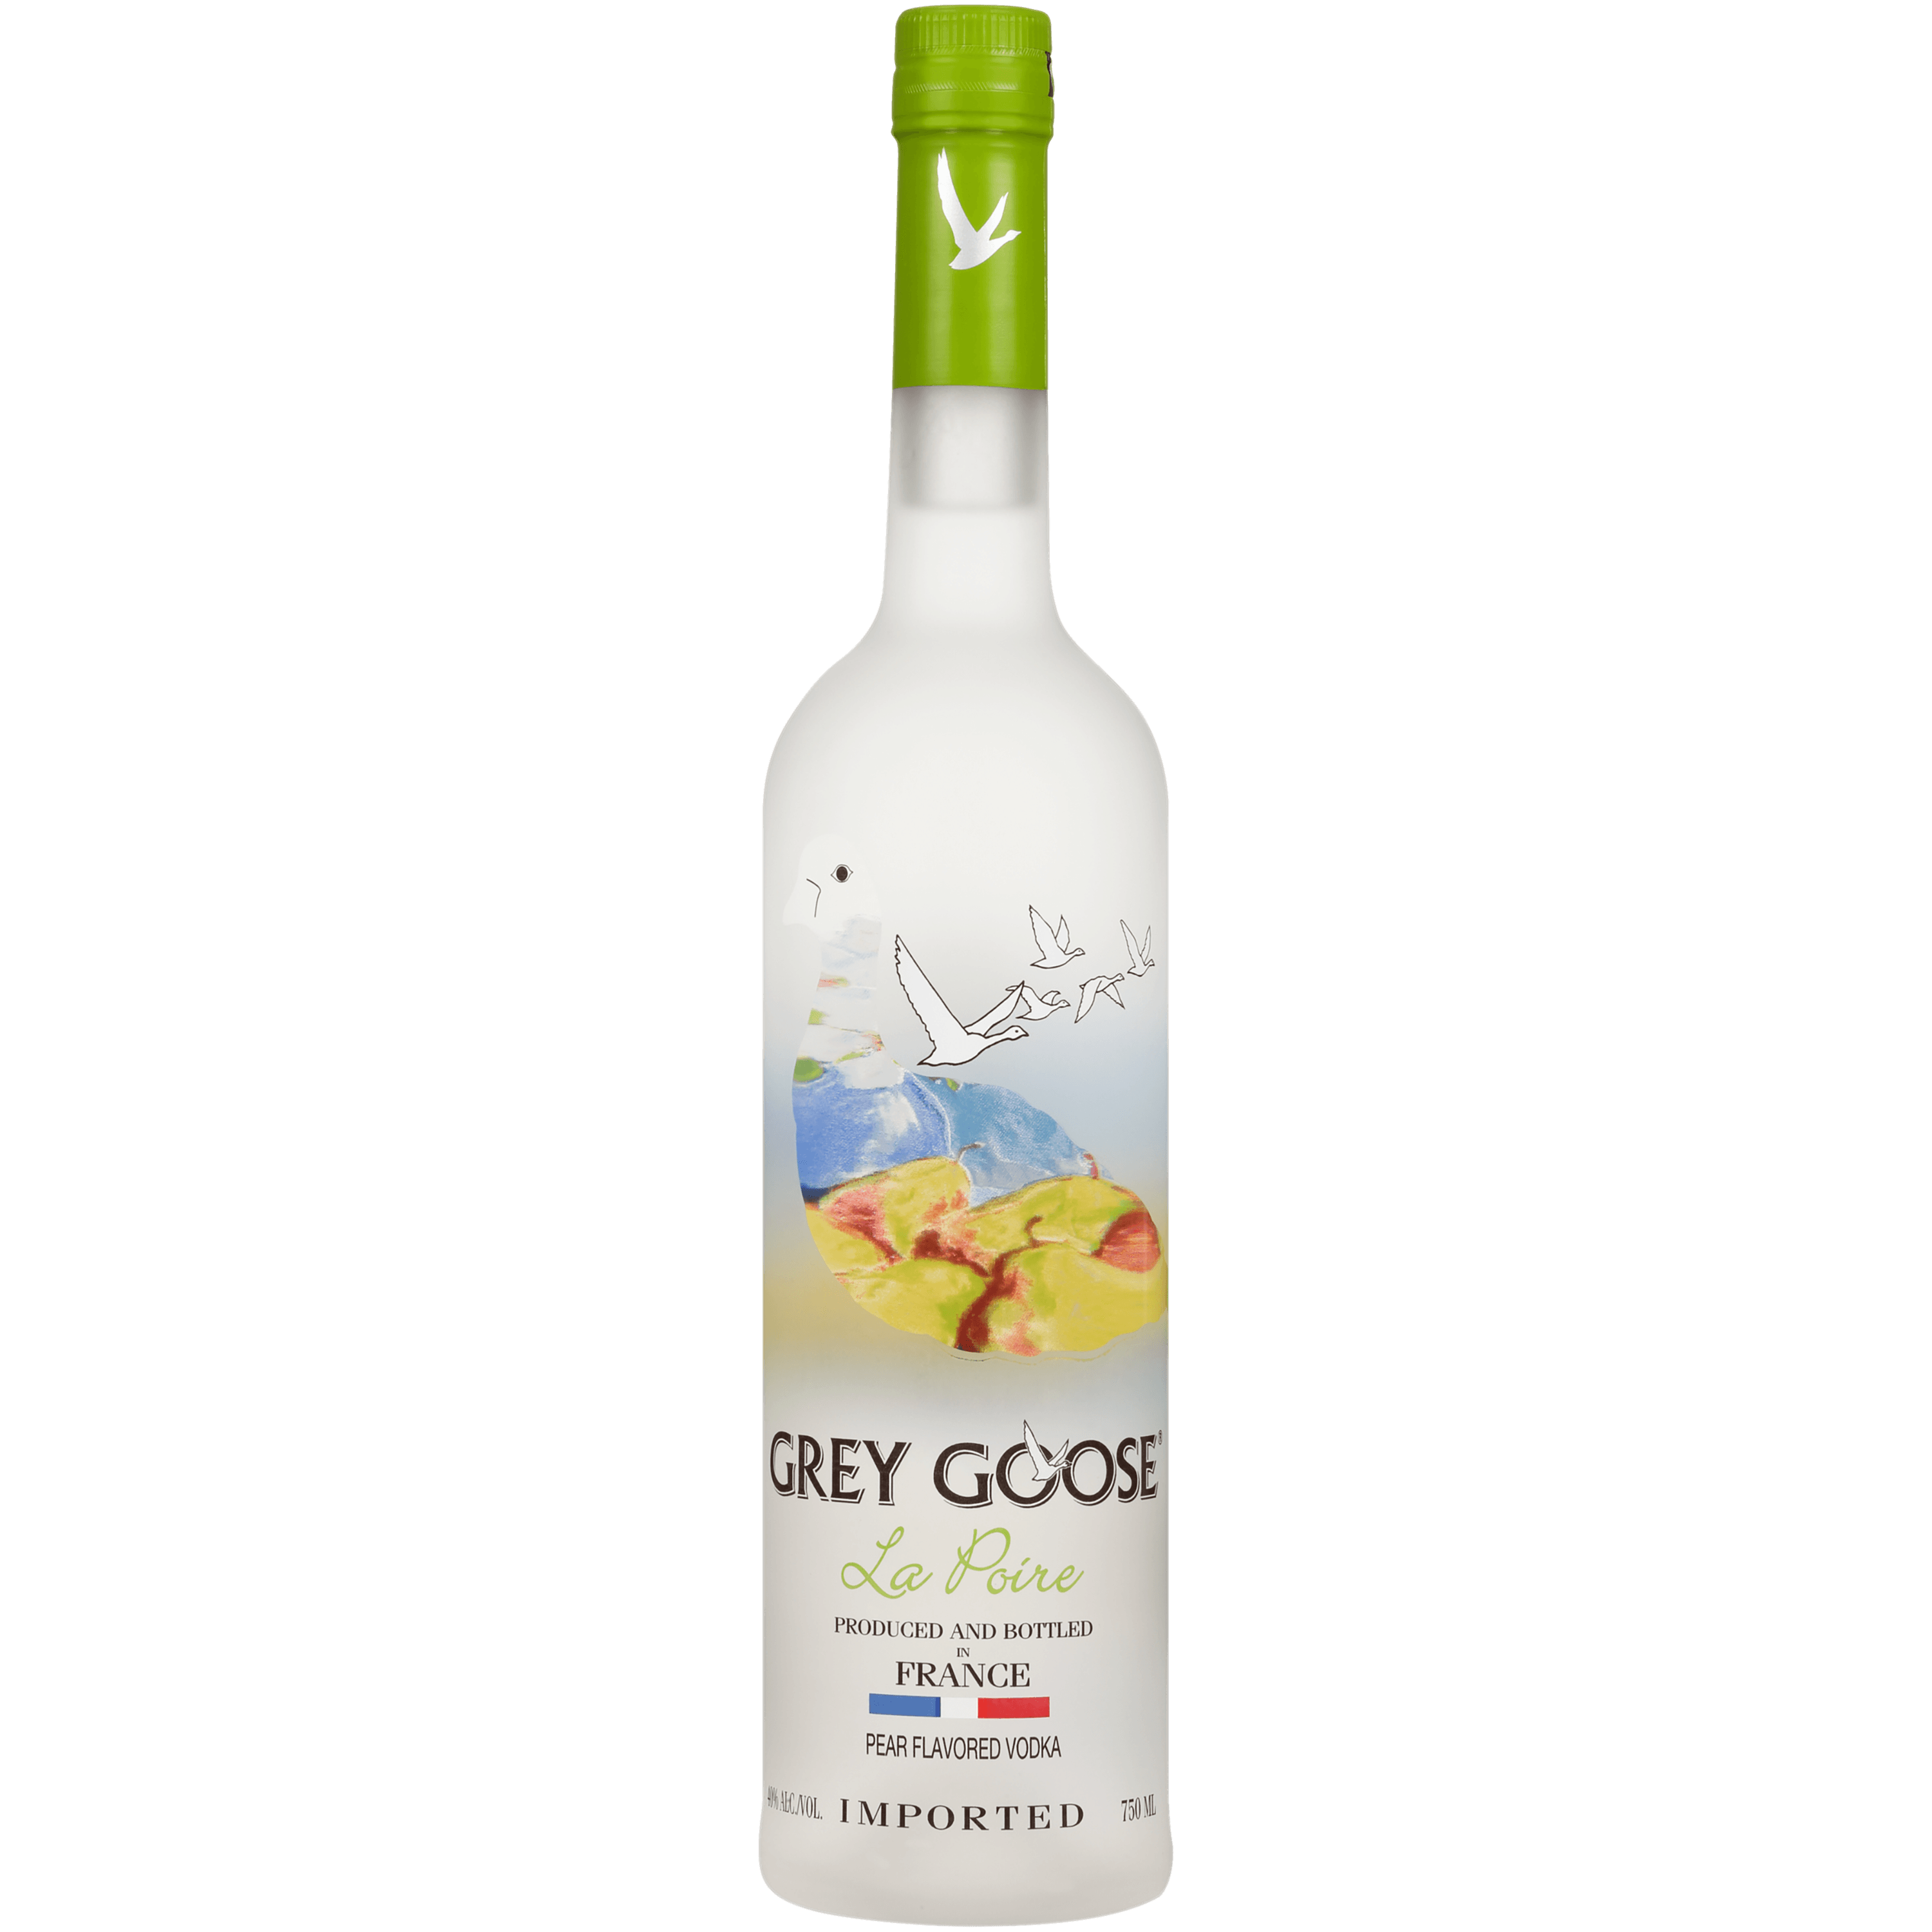 Grey Goose® La Poire